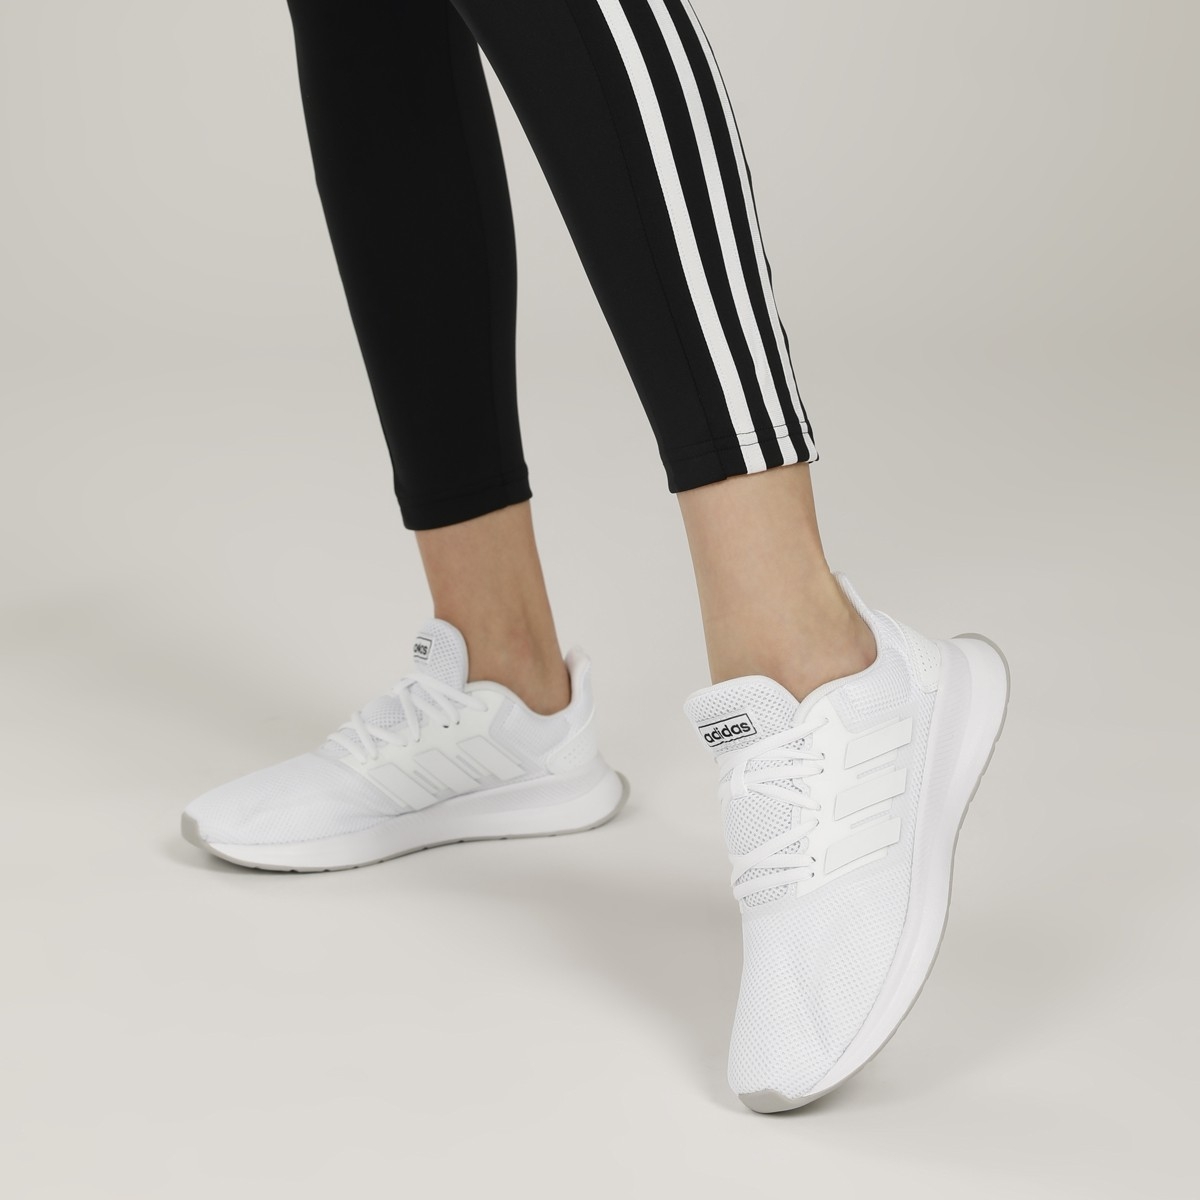 zamanla Cumartesi yasak adidas f36215 kadın koşu ayakkabısı hiçliğin ortasında İdeal